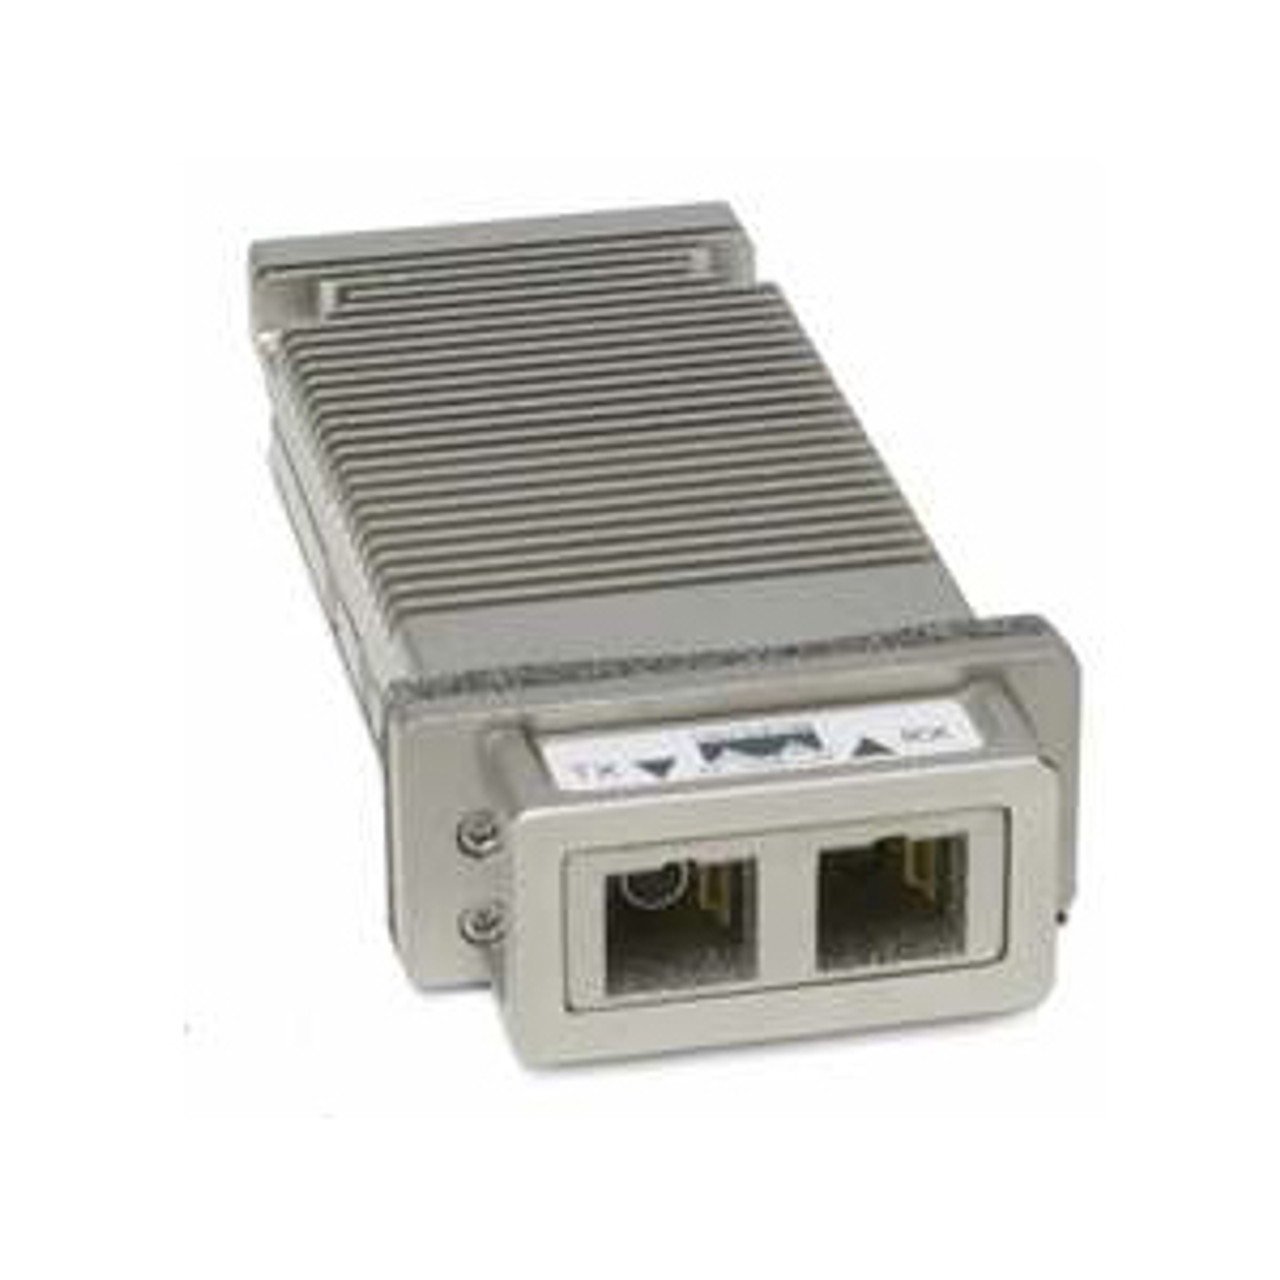 DWDM-X2-54.13= Cisco 10Gbps 10GBase-DWDM Single-Mode Fiber 80km 1554.13nm Duplex SC Connector X2 Transceiver Module (Refurbished)